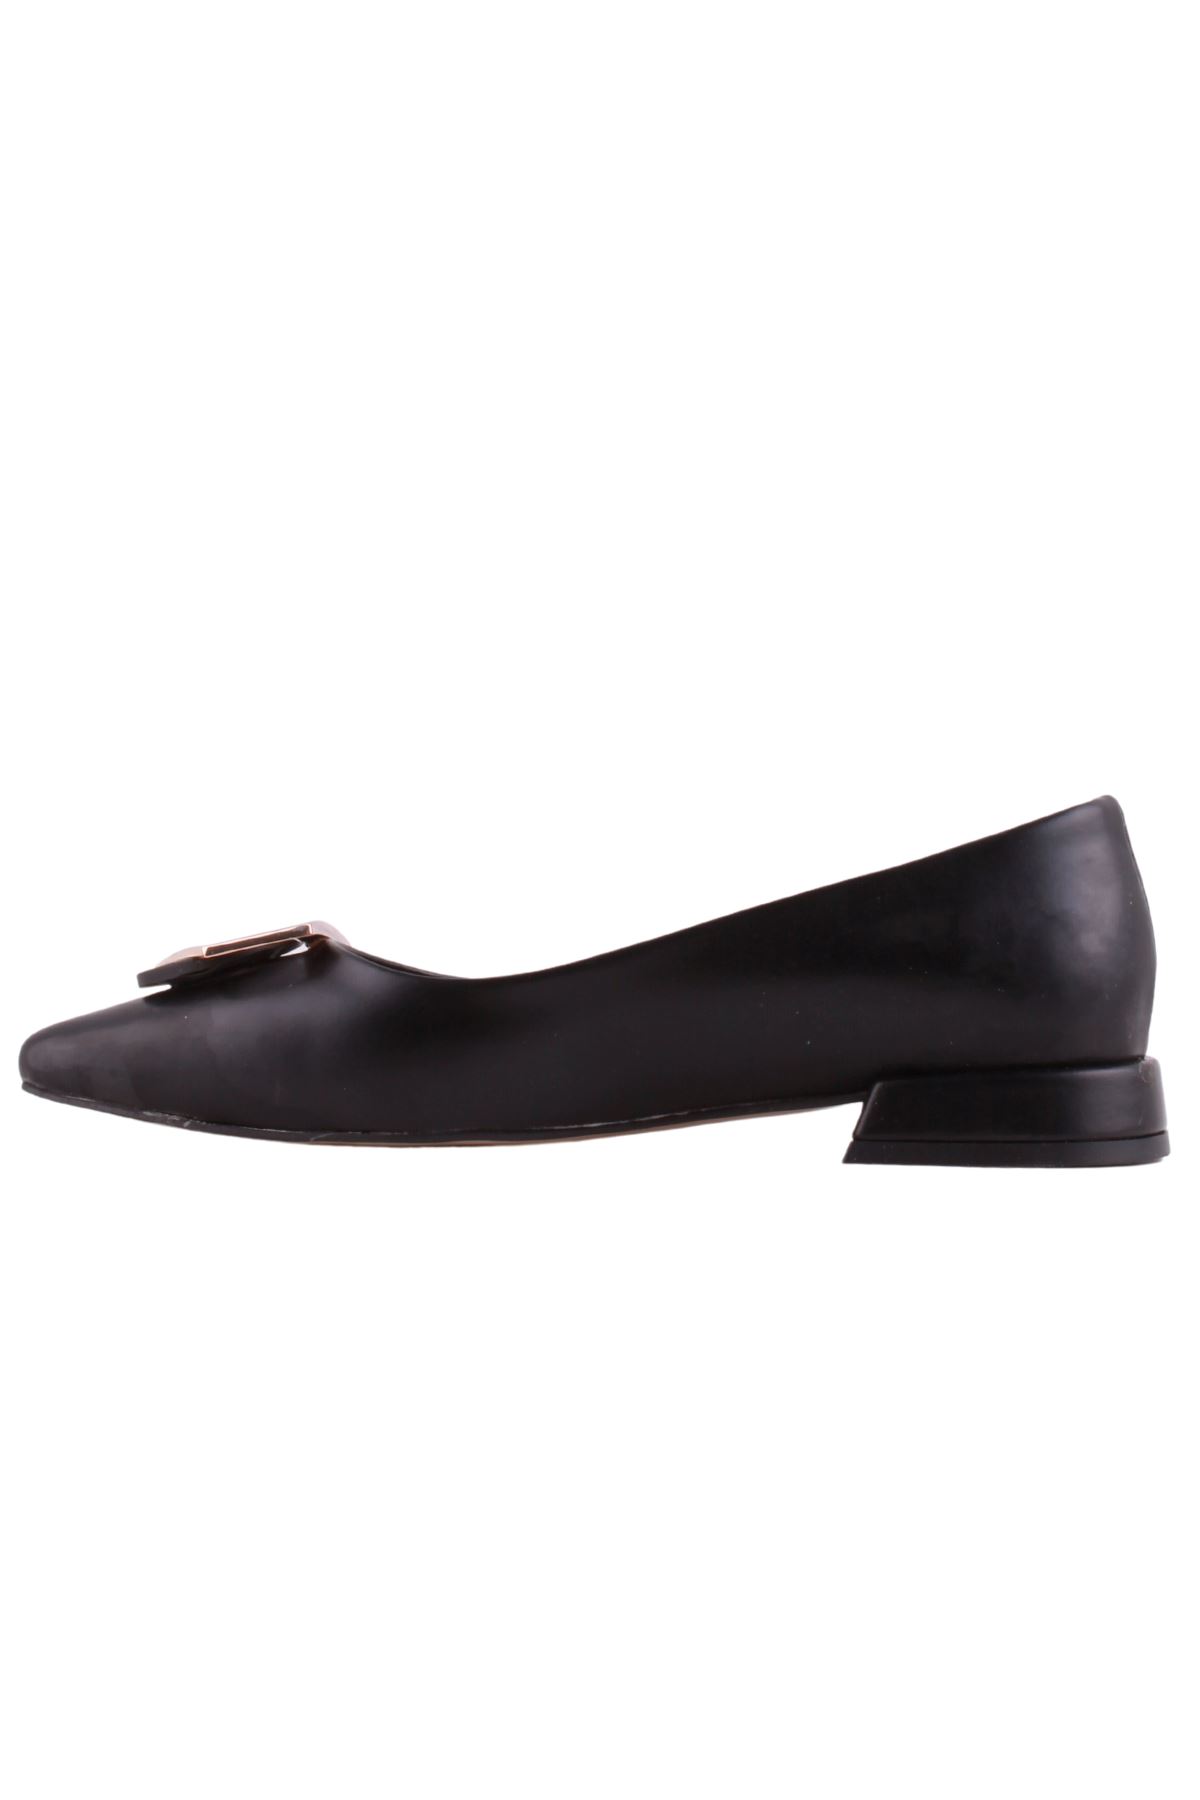 Kadın Siyah Klasik Ayakkabı - K23.36.2713